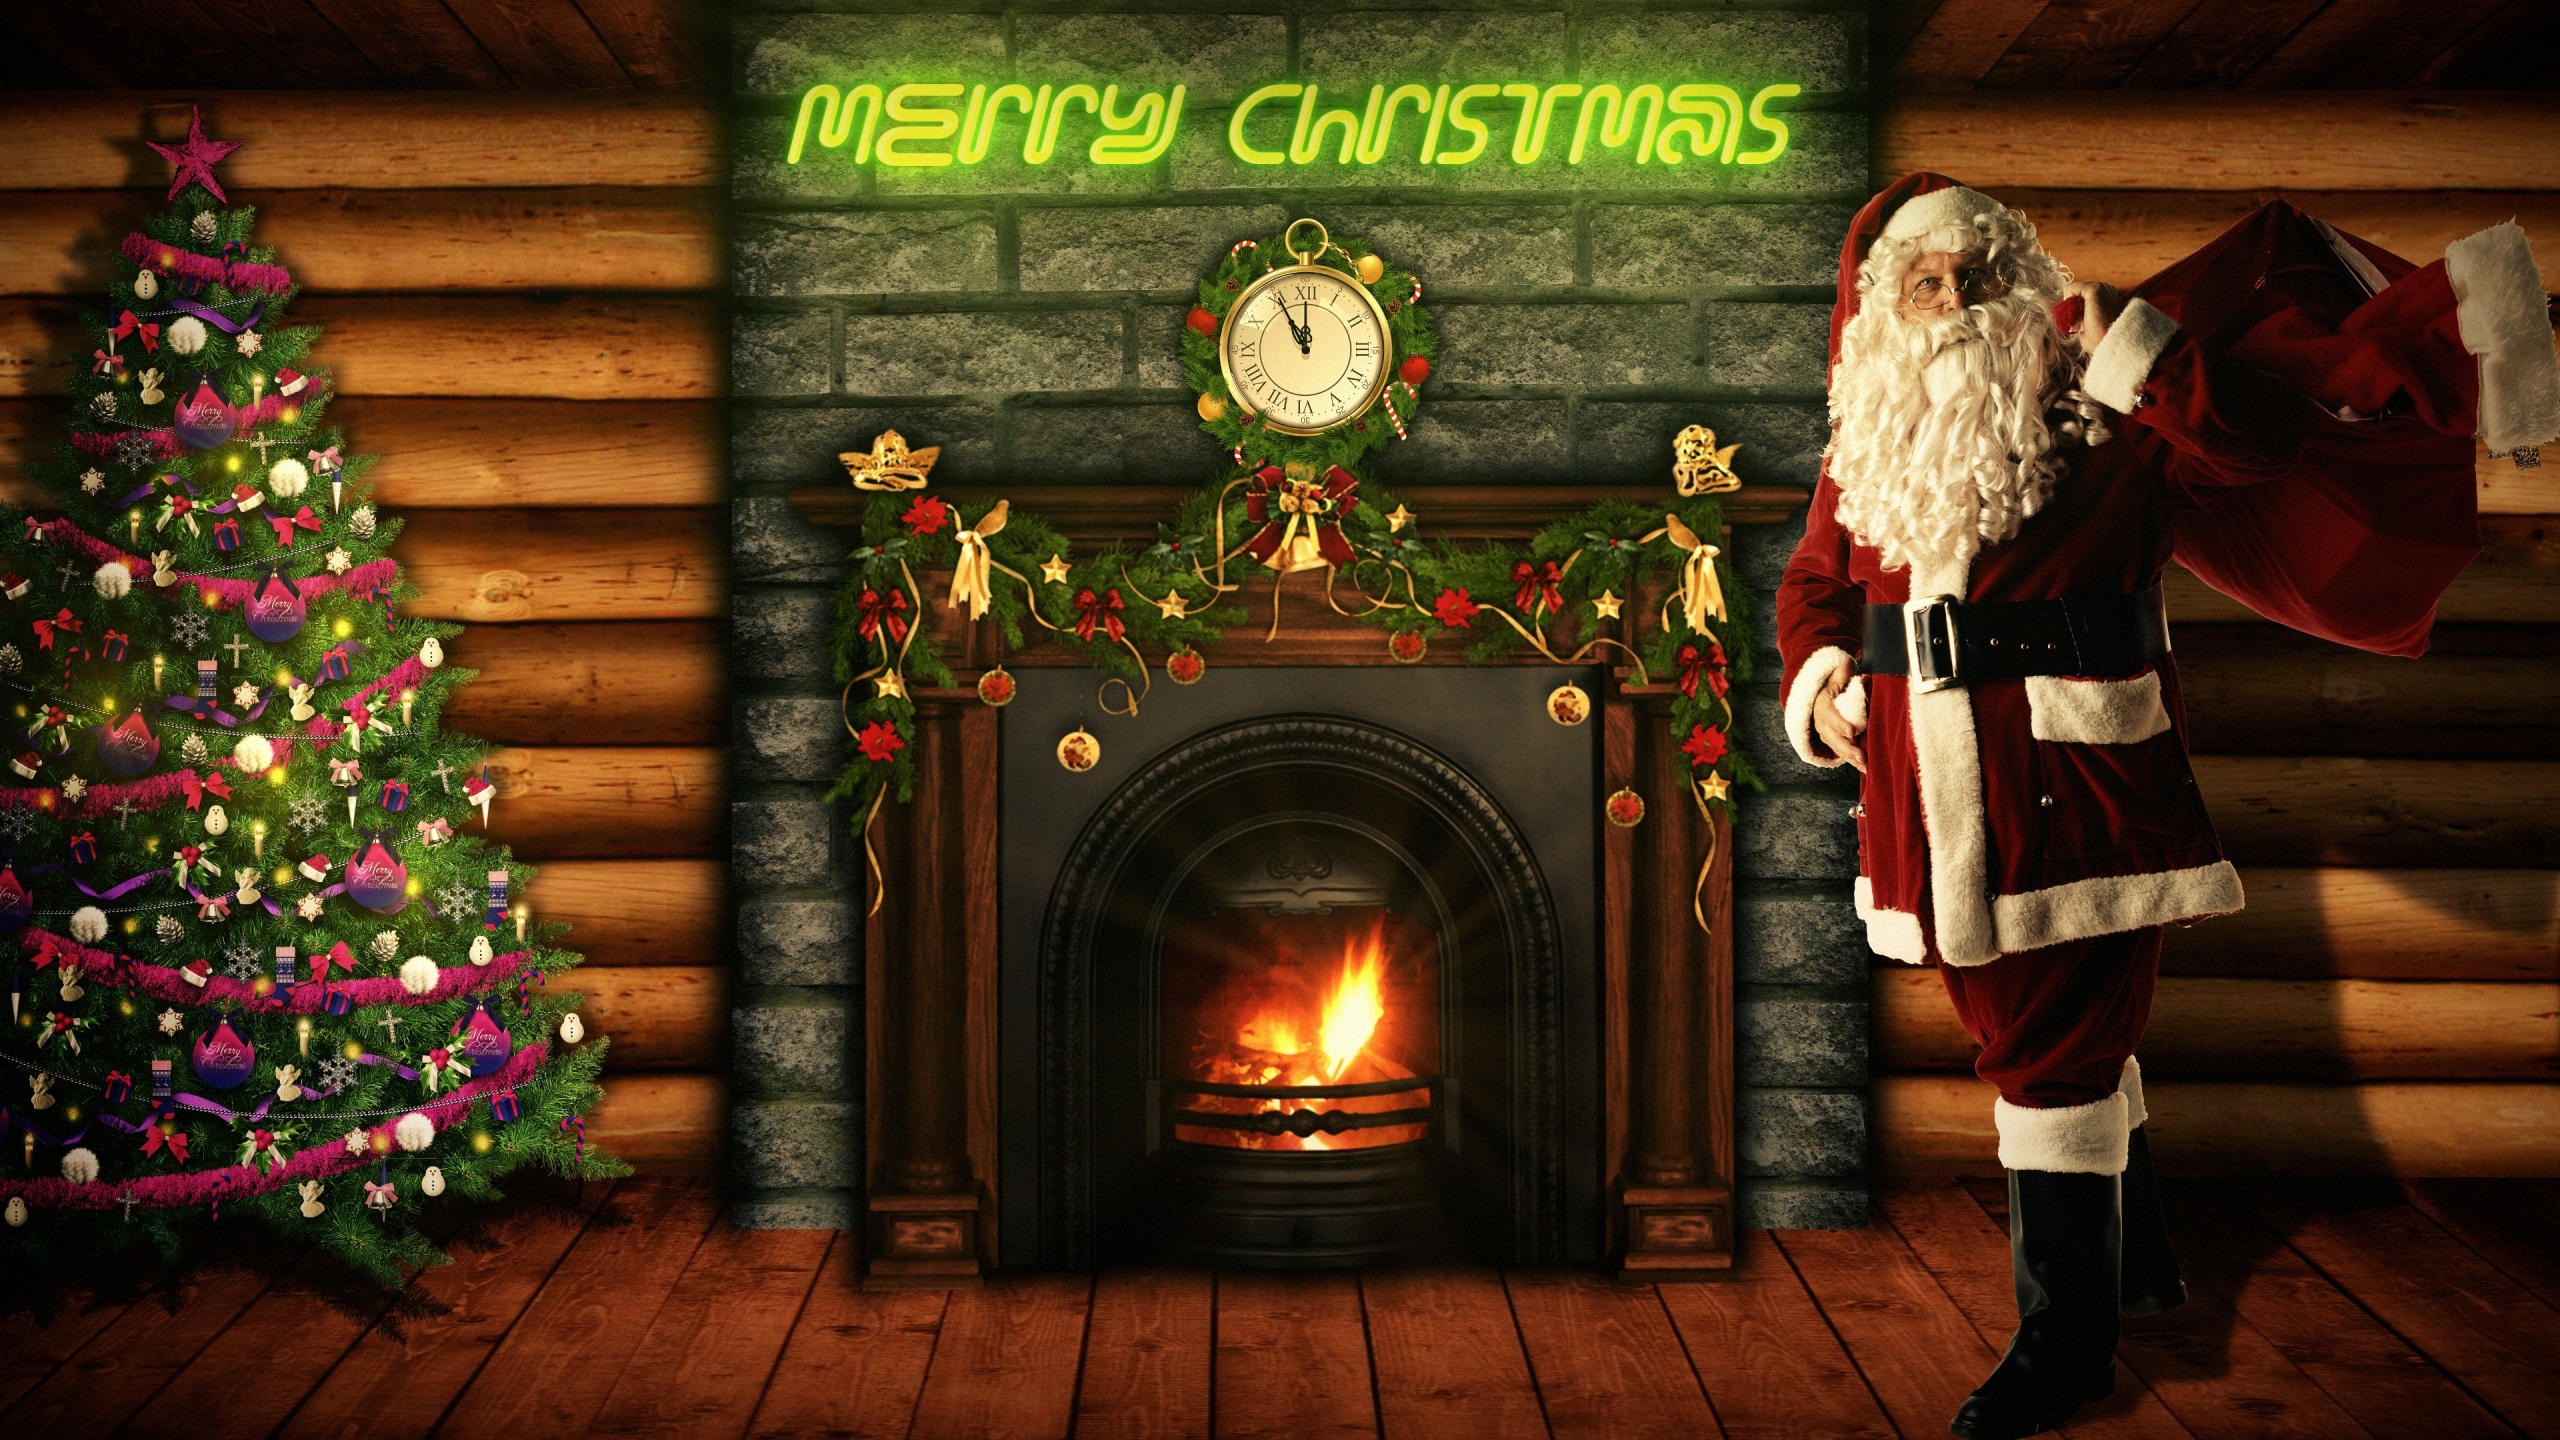 Áo choàng đỏ của ông già Noel và râu dài là biểu tượng của Giáng Sinh, mỗi lần nhìn vào nó sẽ mang lại cảm giác ấm áp. Chúng tôi có một bộ sưu tập những hình nền Giáng sinh dễ thương về ông già Noel giúp bạn đưa mùa lễ hội về nhà. Hãy tìm kiếm trang web của chúng tôi để có thể tải xuống những bức ảnh phù hợp và chào đón một đêm Noel vui vẻ!